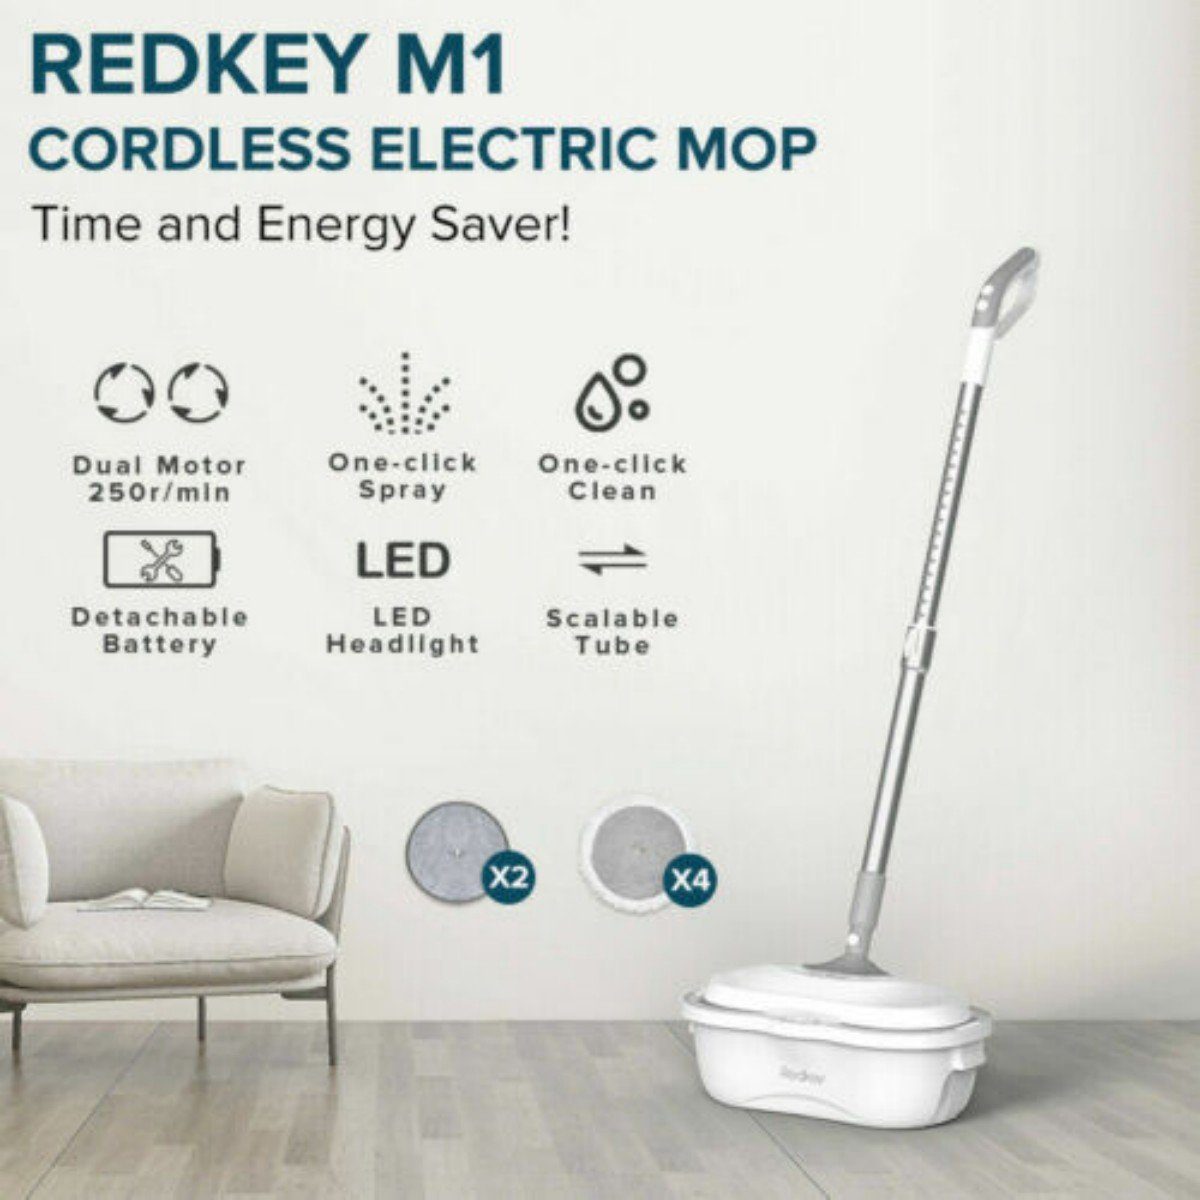 Redkey Akku-Wischmopp M1, 60,00 Abwasser, mAh kabelloser Wischmopp, 2200 W, Frisch- Elektro-Mopp, selbstreinigender von beutellos,Trennung LED, und